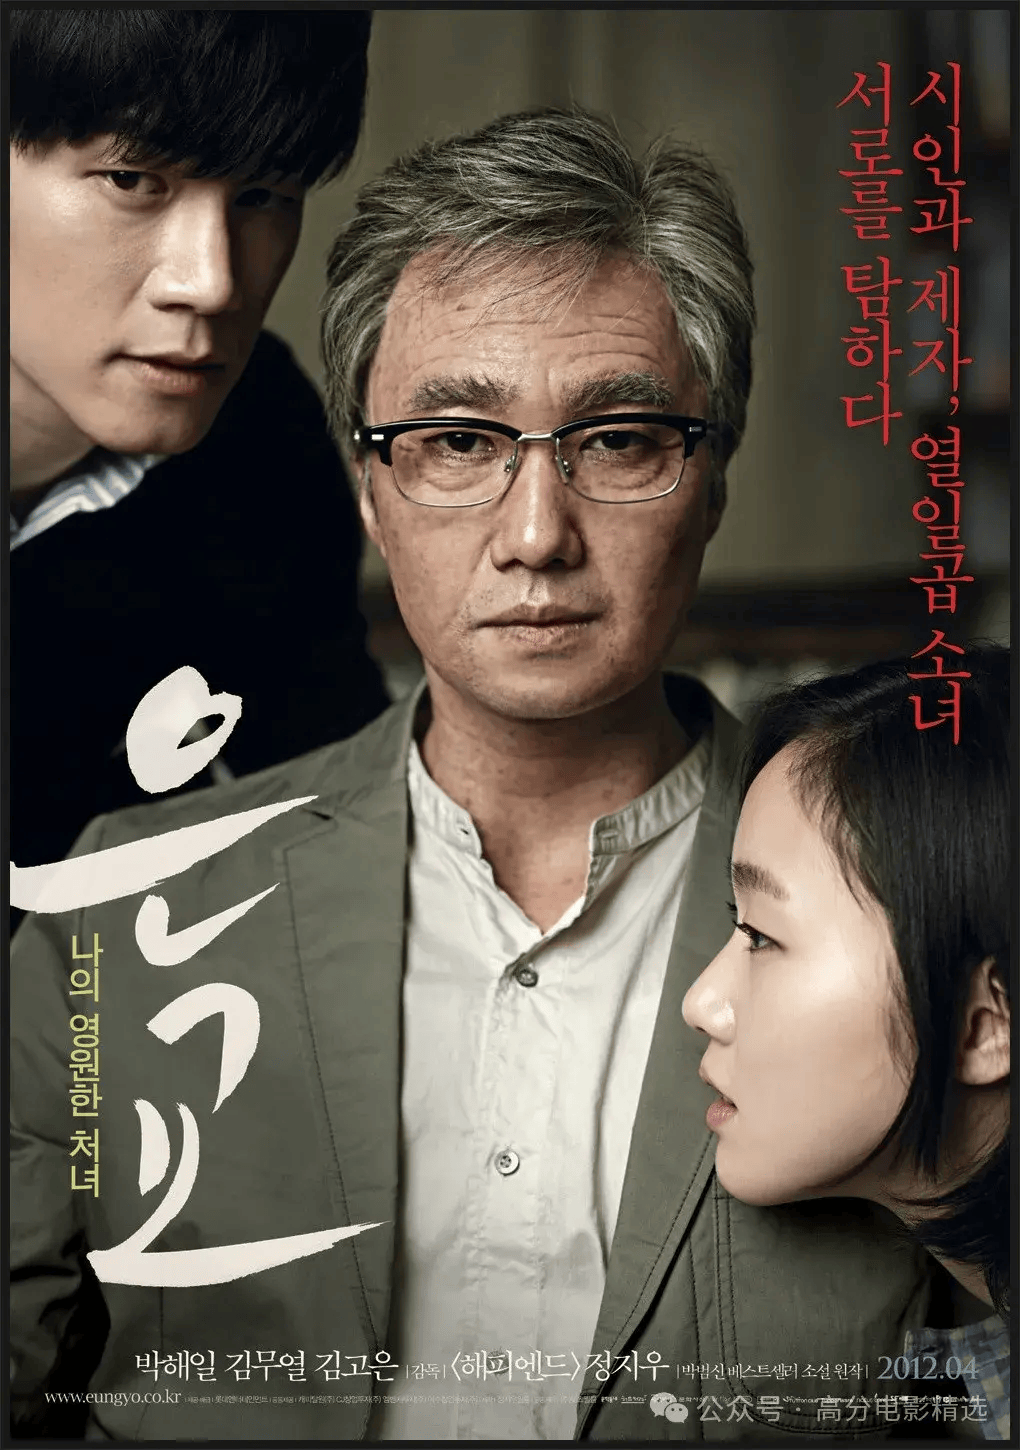 4部香艳唯美的韩国限制级电影,尺度很大,每一秒都不忍快进!